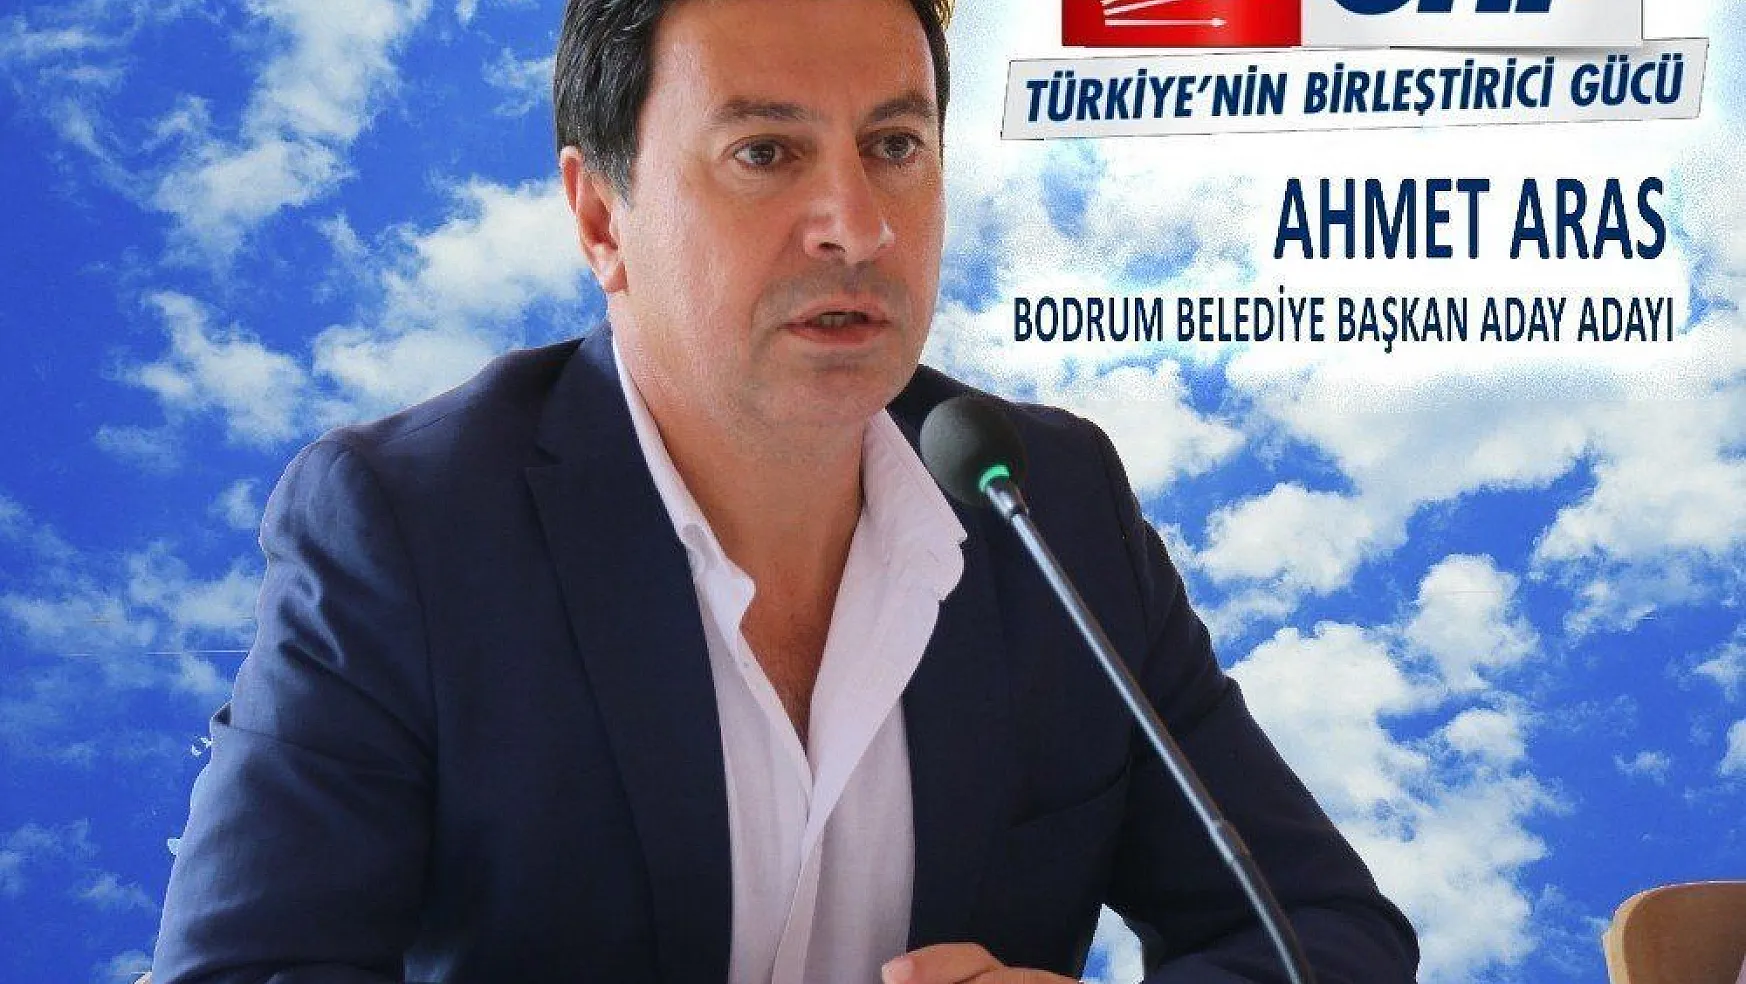 CHP Bodrum Belediye Başkan aday adayı Ahmet Aras 'Belediye başkan adaylığı için çıktığım yolda çalışmaya devam ediyorum'